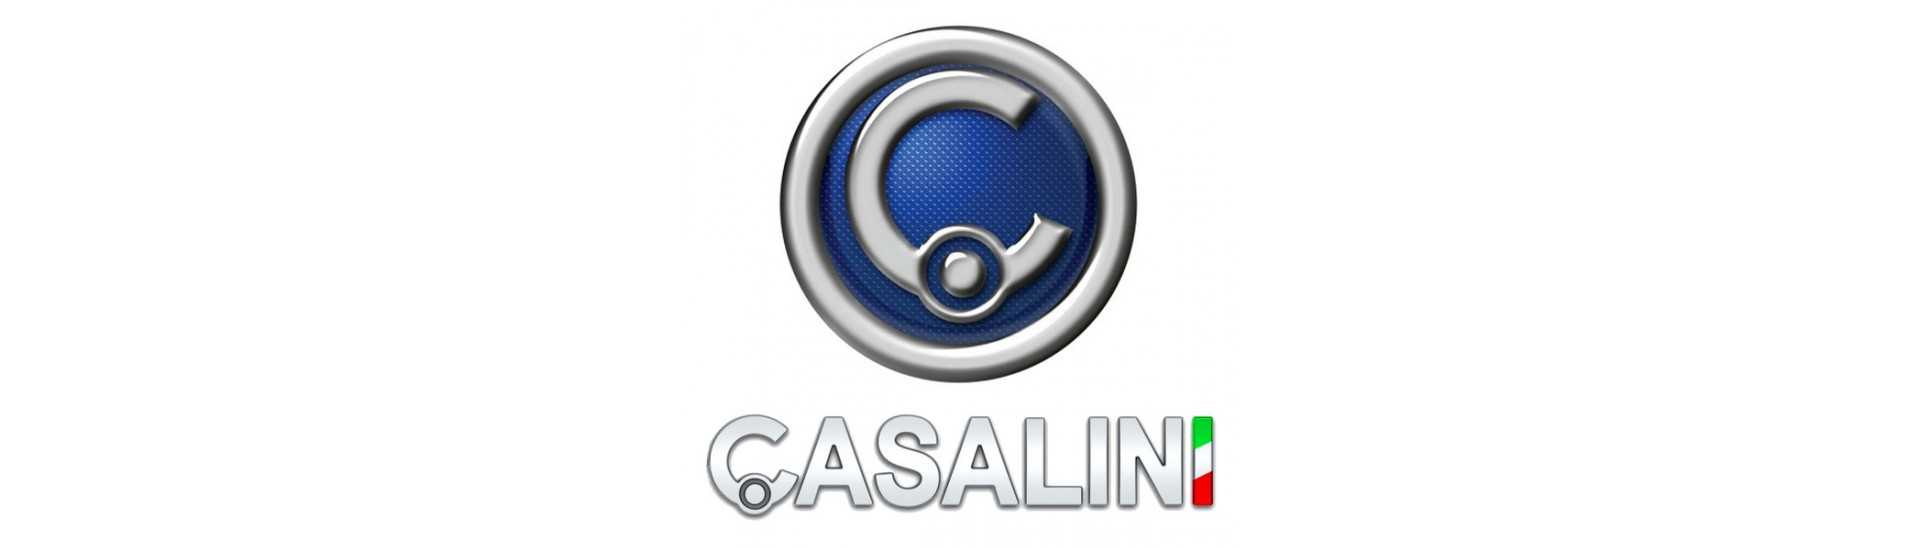 Korkein hinta autolle ilman lupaa Casalini